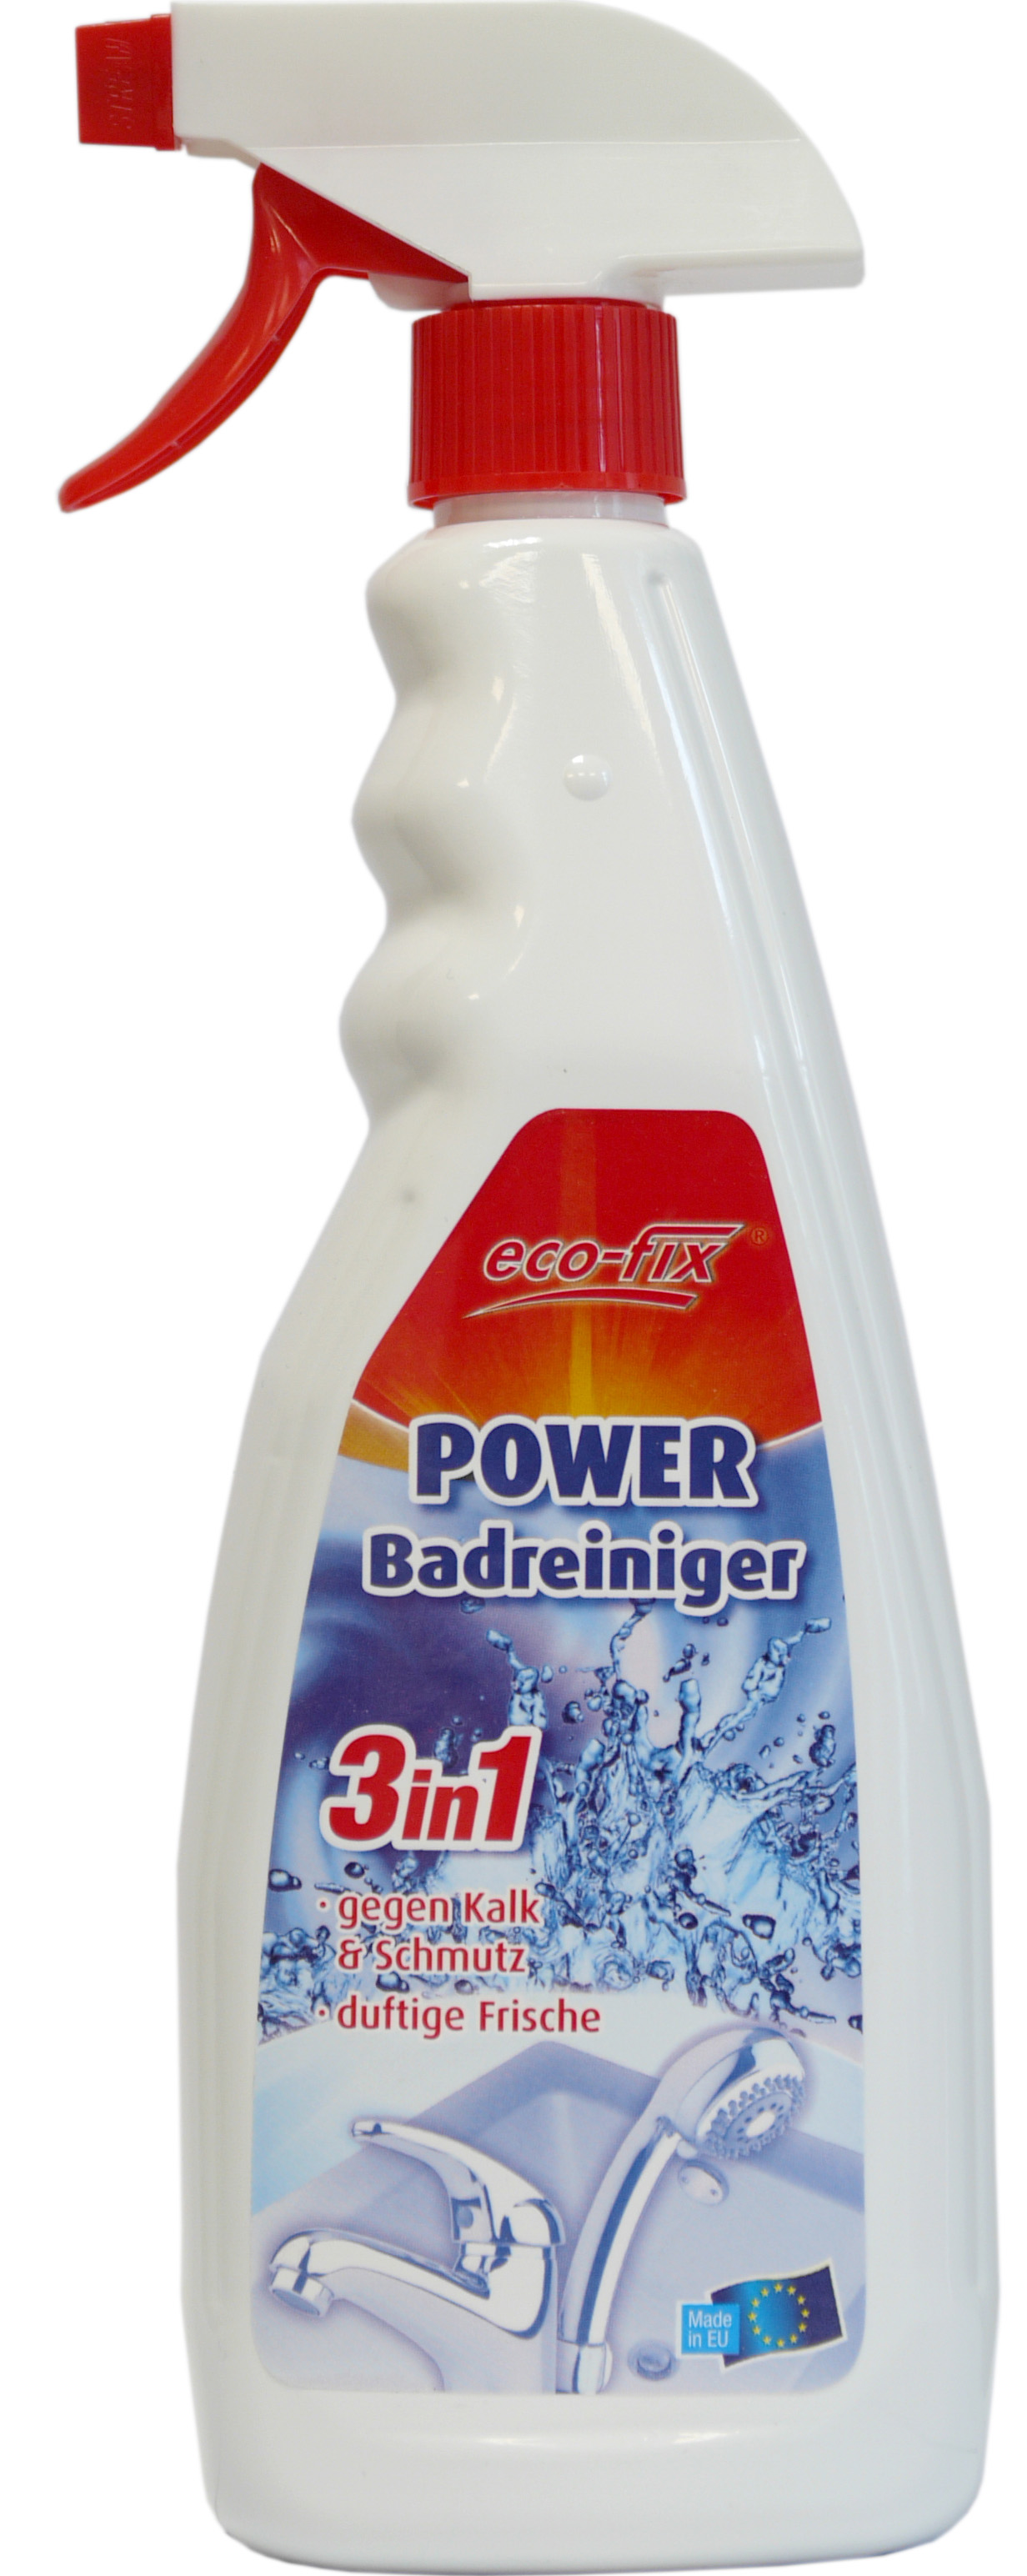 01864 - power bath cleaning spray 750 ml